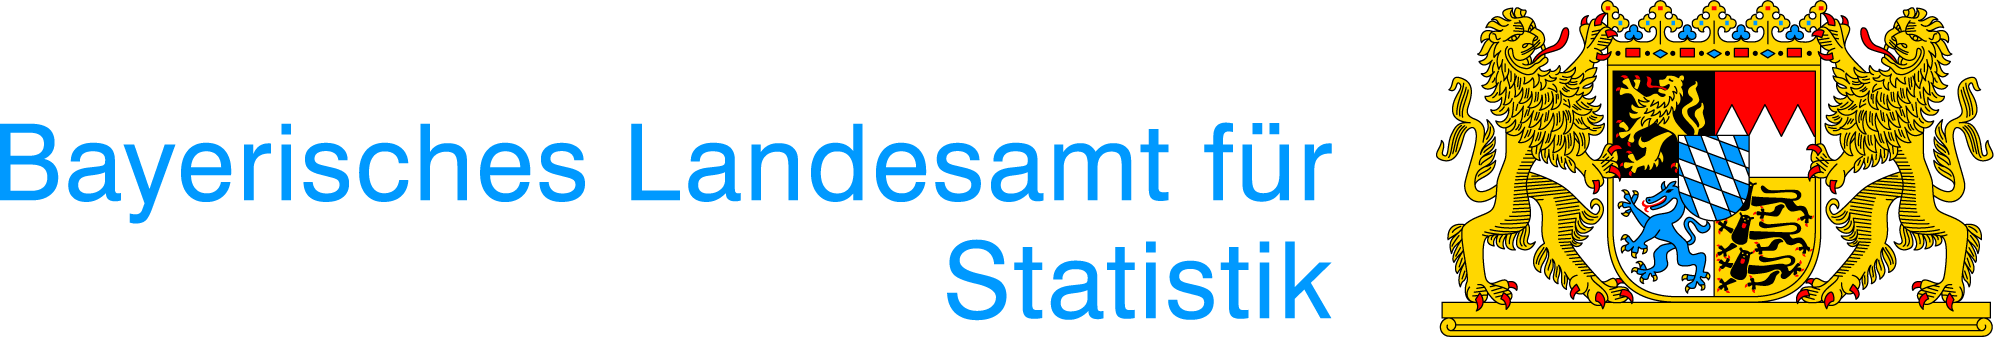 Bayerisches Landesamt für Statistik Logo (PNG)